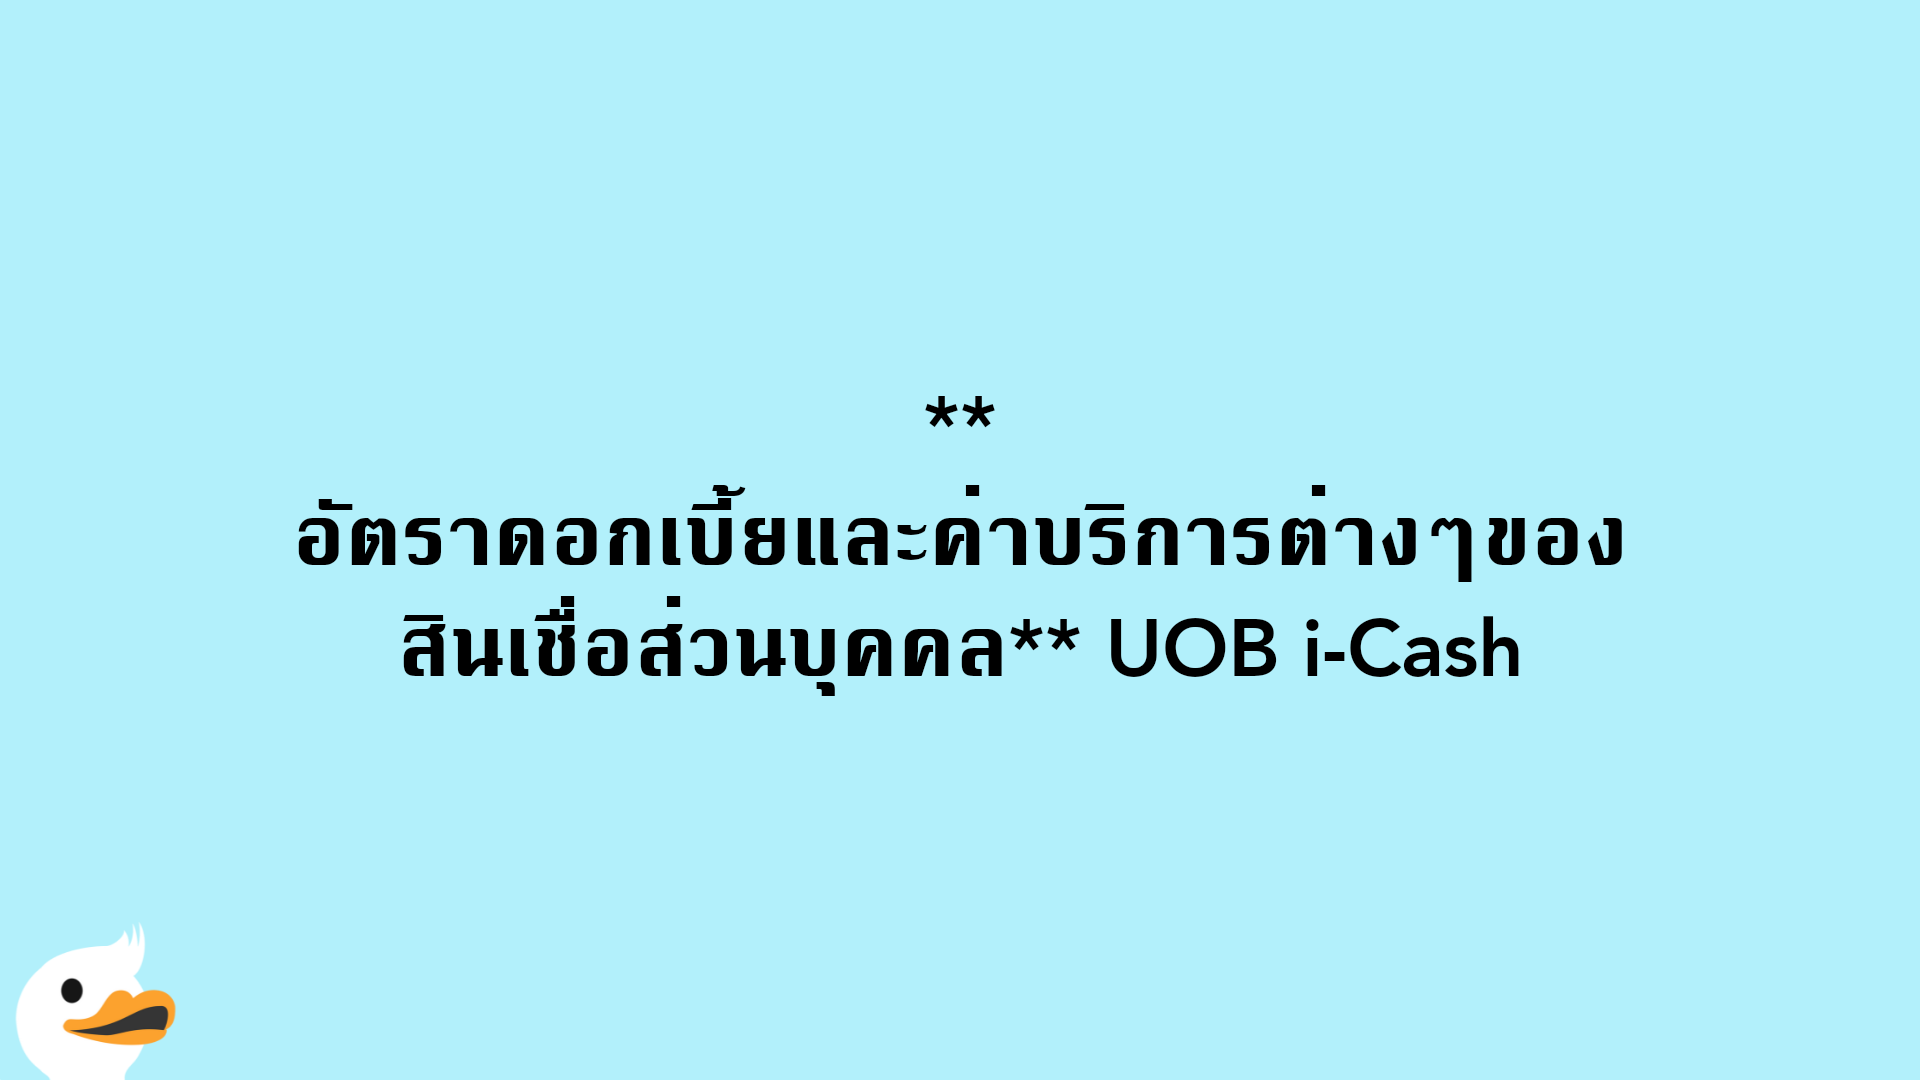 อัตราดอกเบี้ยและค่าบริการต่างๆของสินเชื่อส่วนบุคคล UOB i-Cash